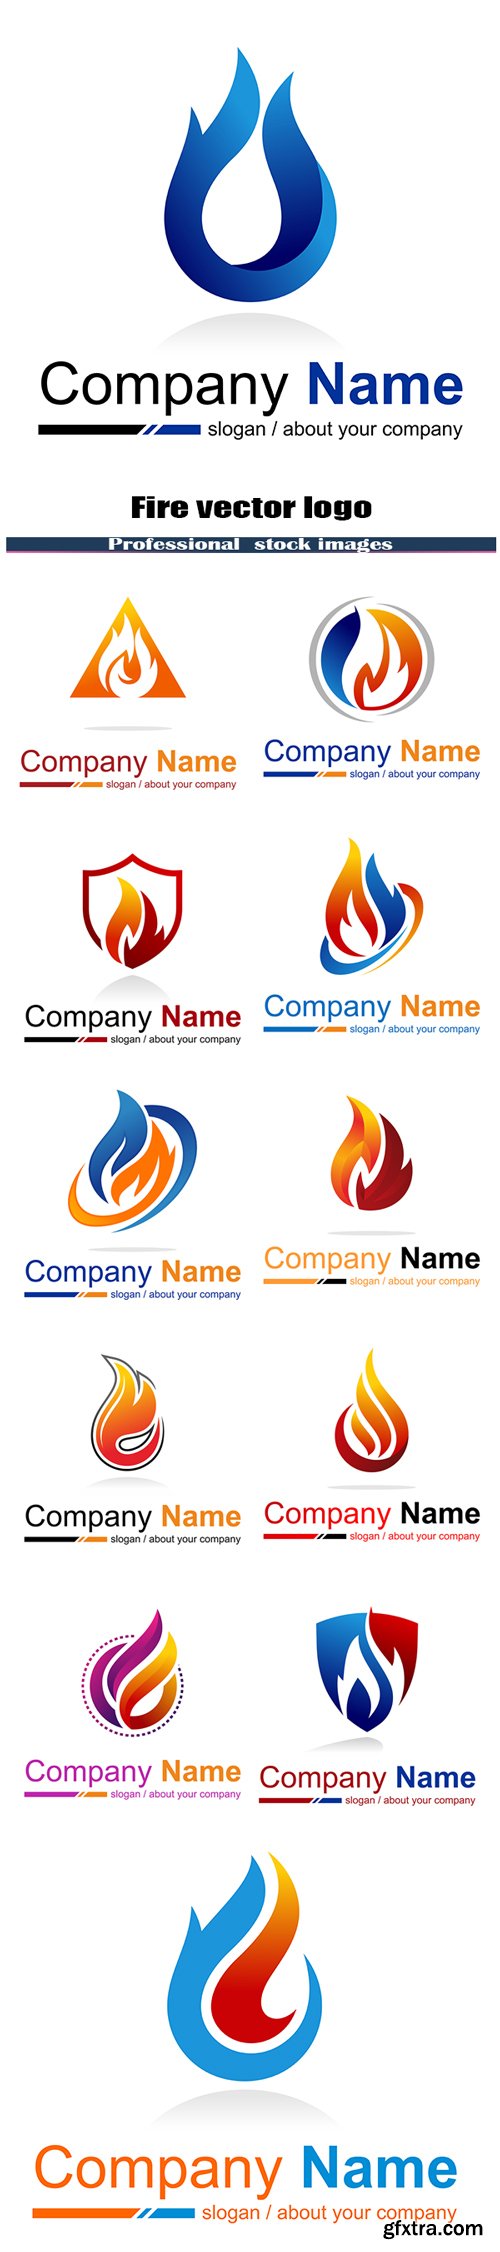 Fire vector logo